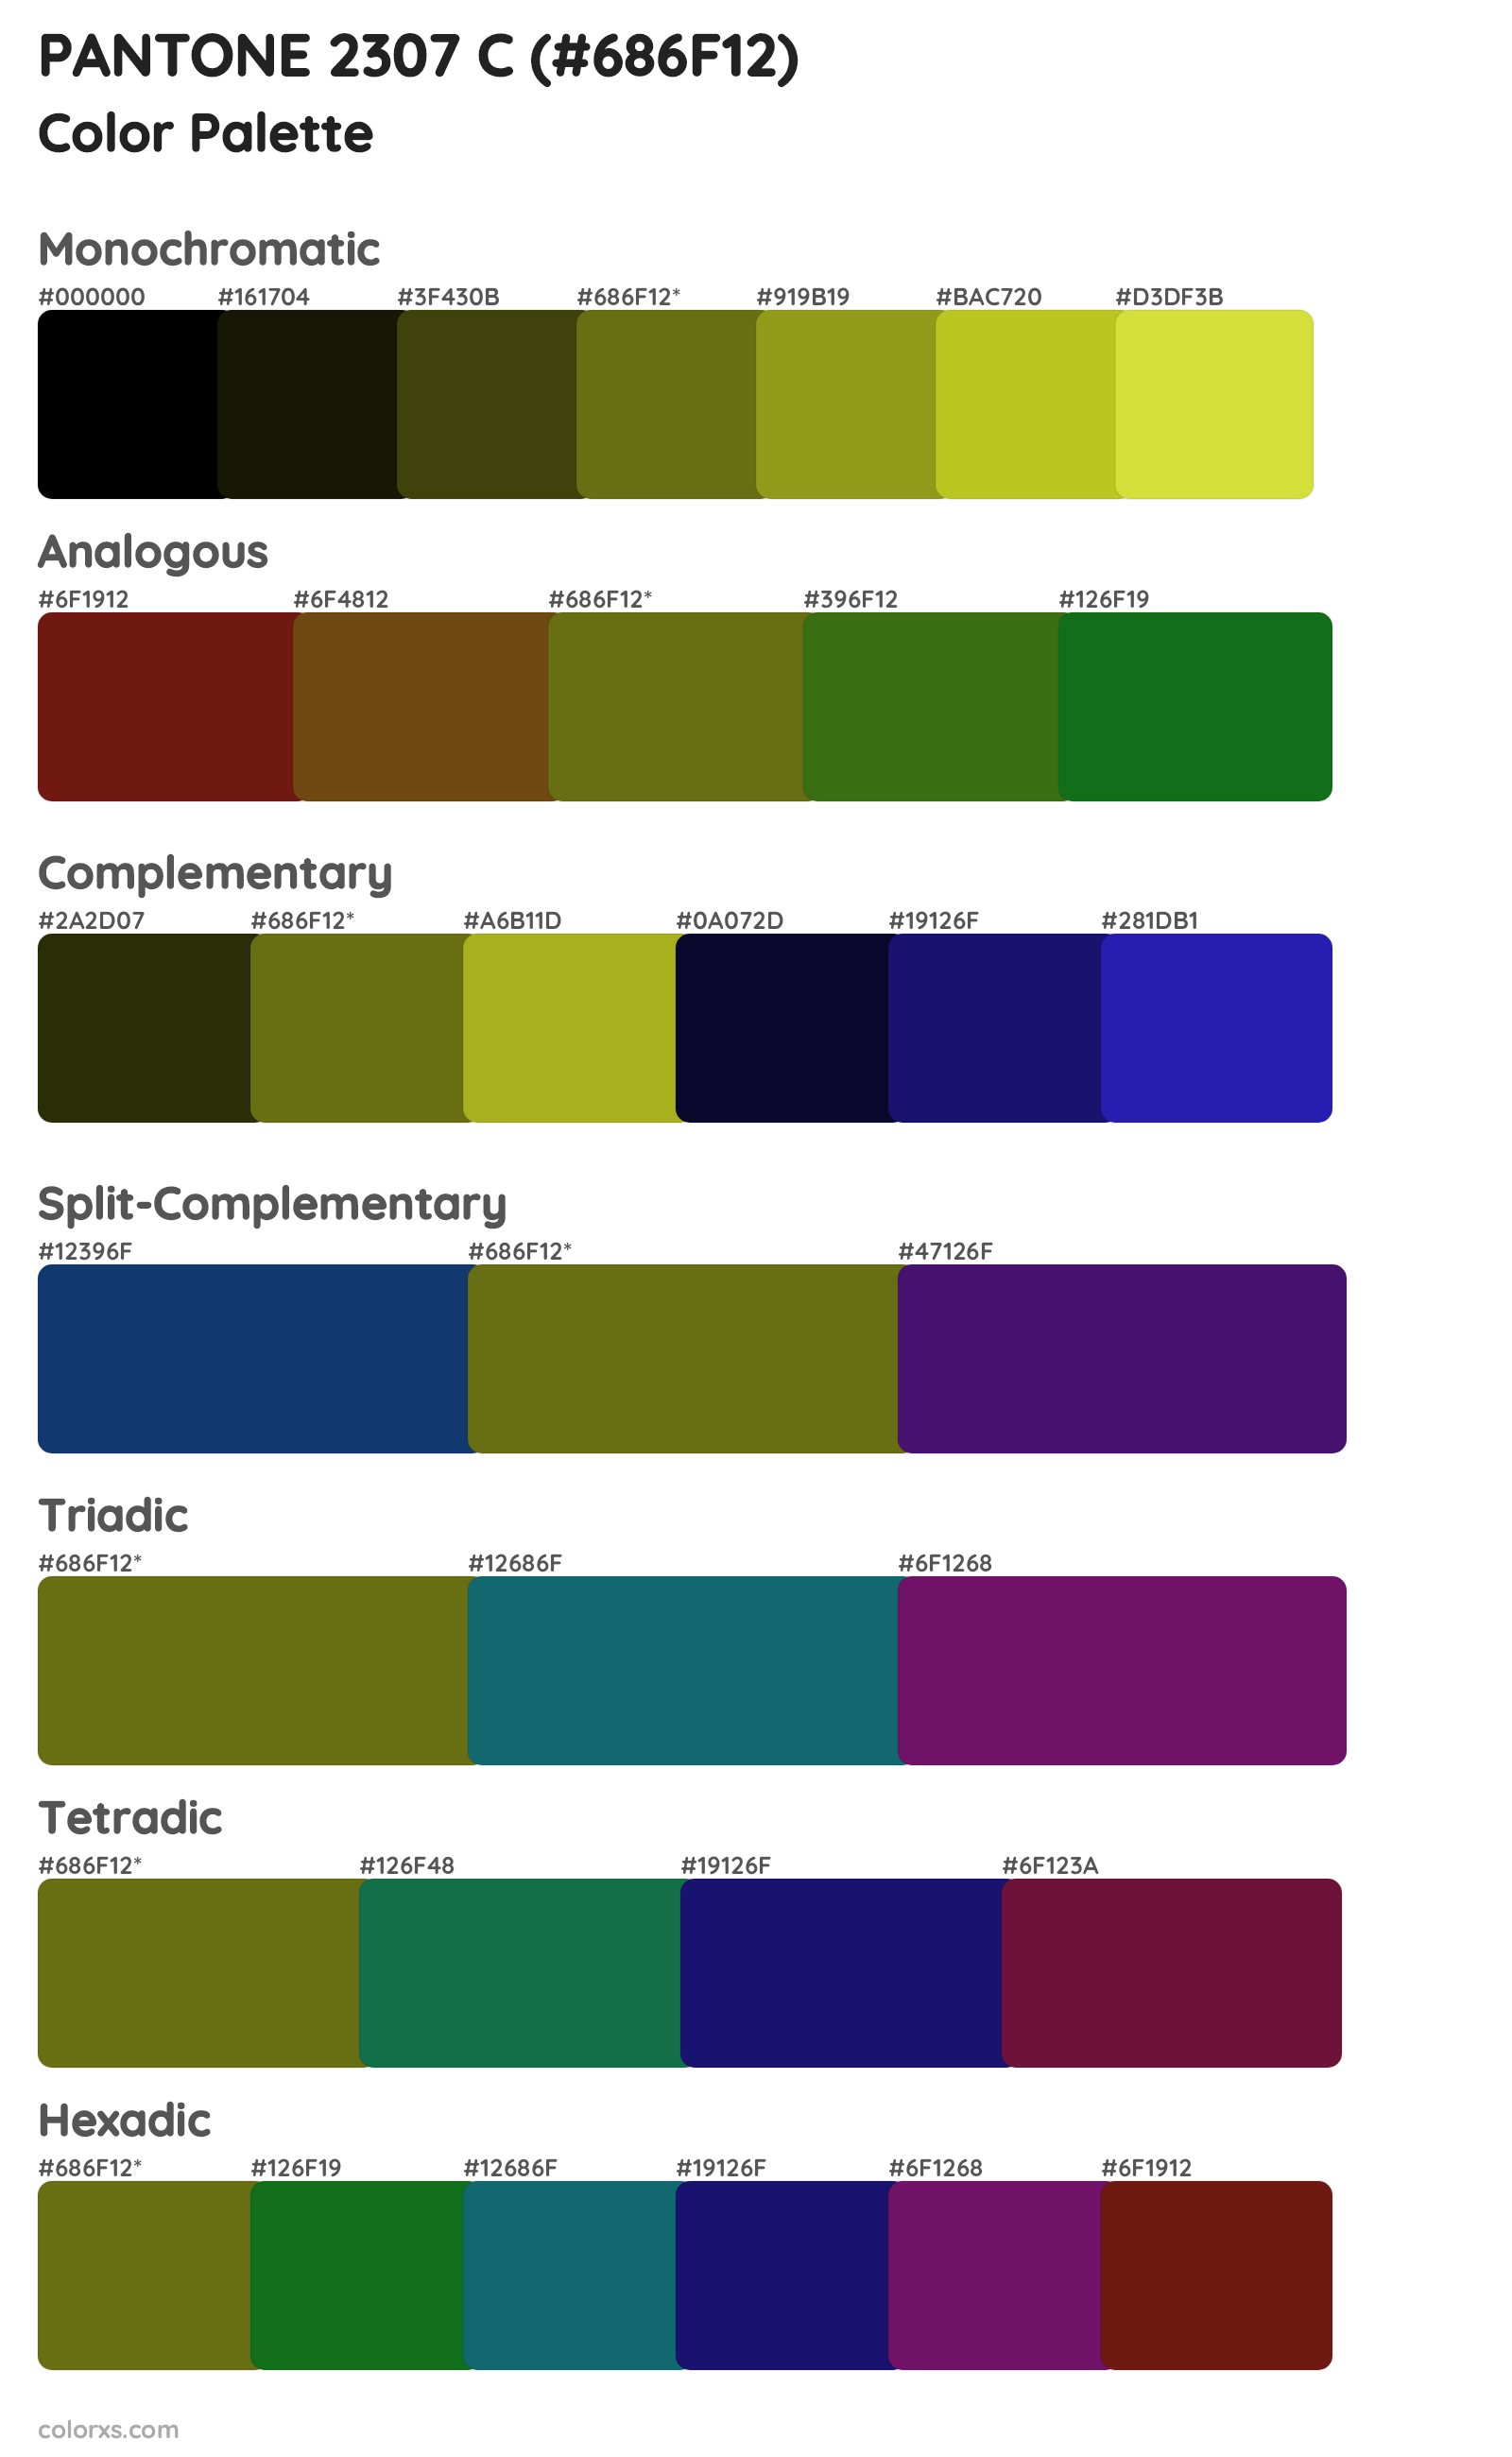 PANTONE 2307 C Color Scheme Palettes